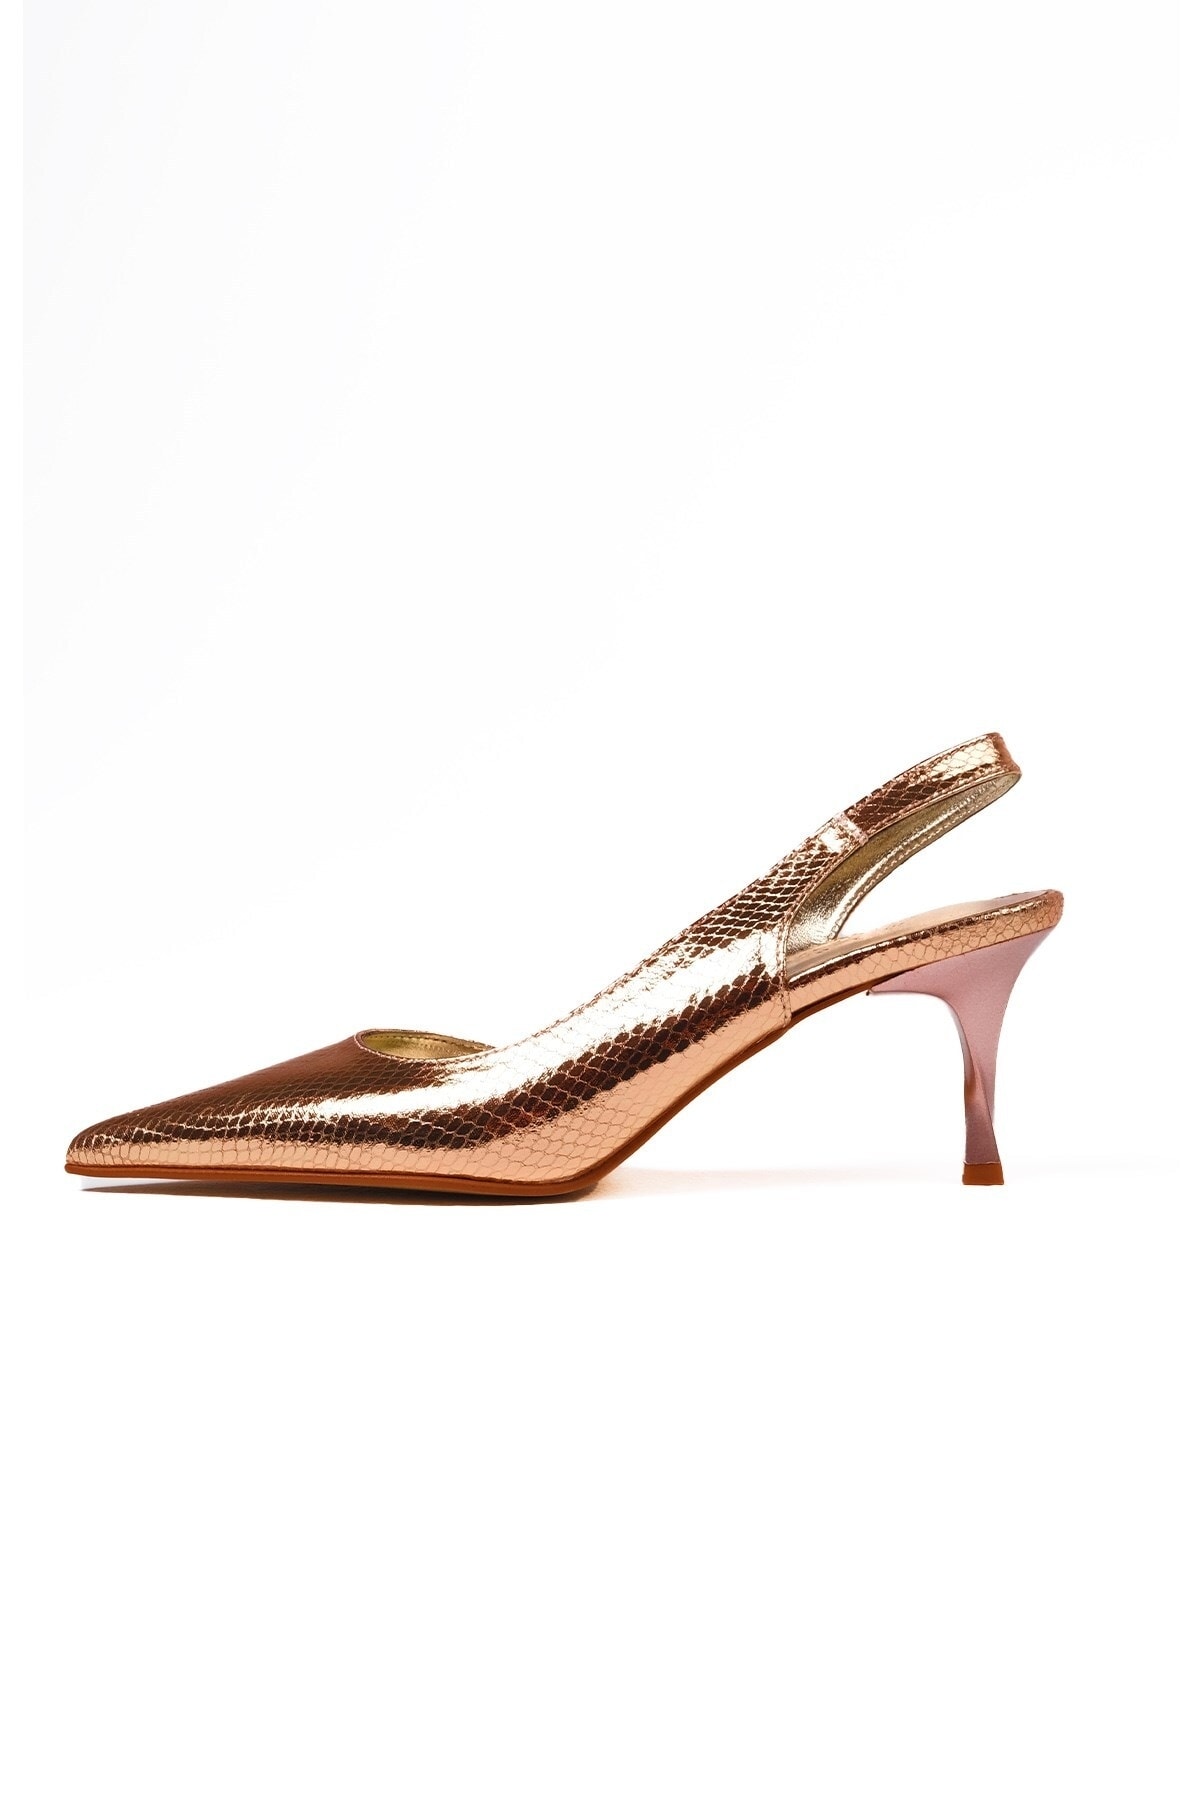 Mio Gusto Clarice Bakır Renk Yılan Derisi Desenli Kadın Topuklu Ayakkabı